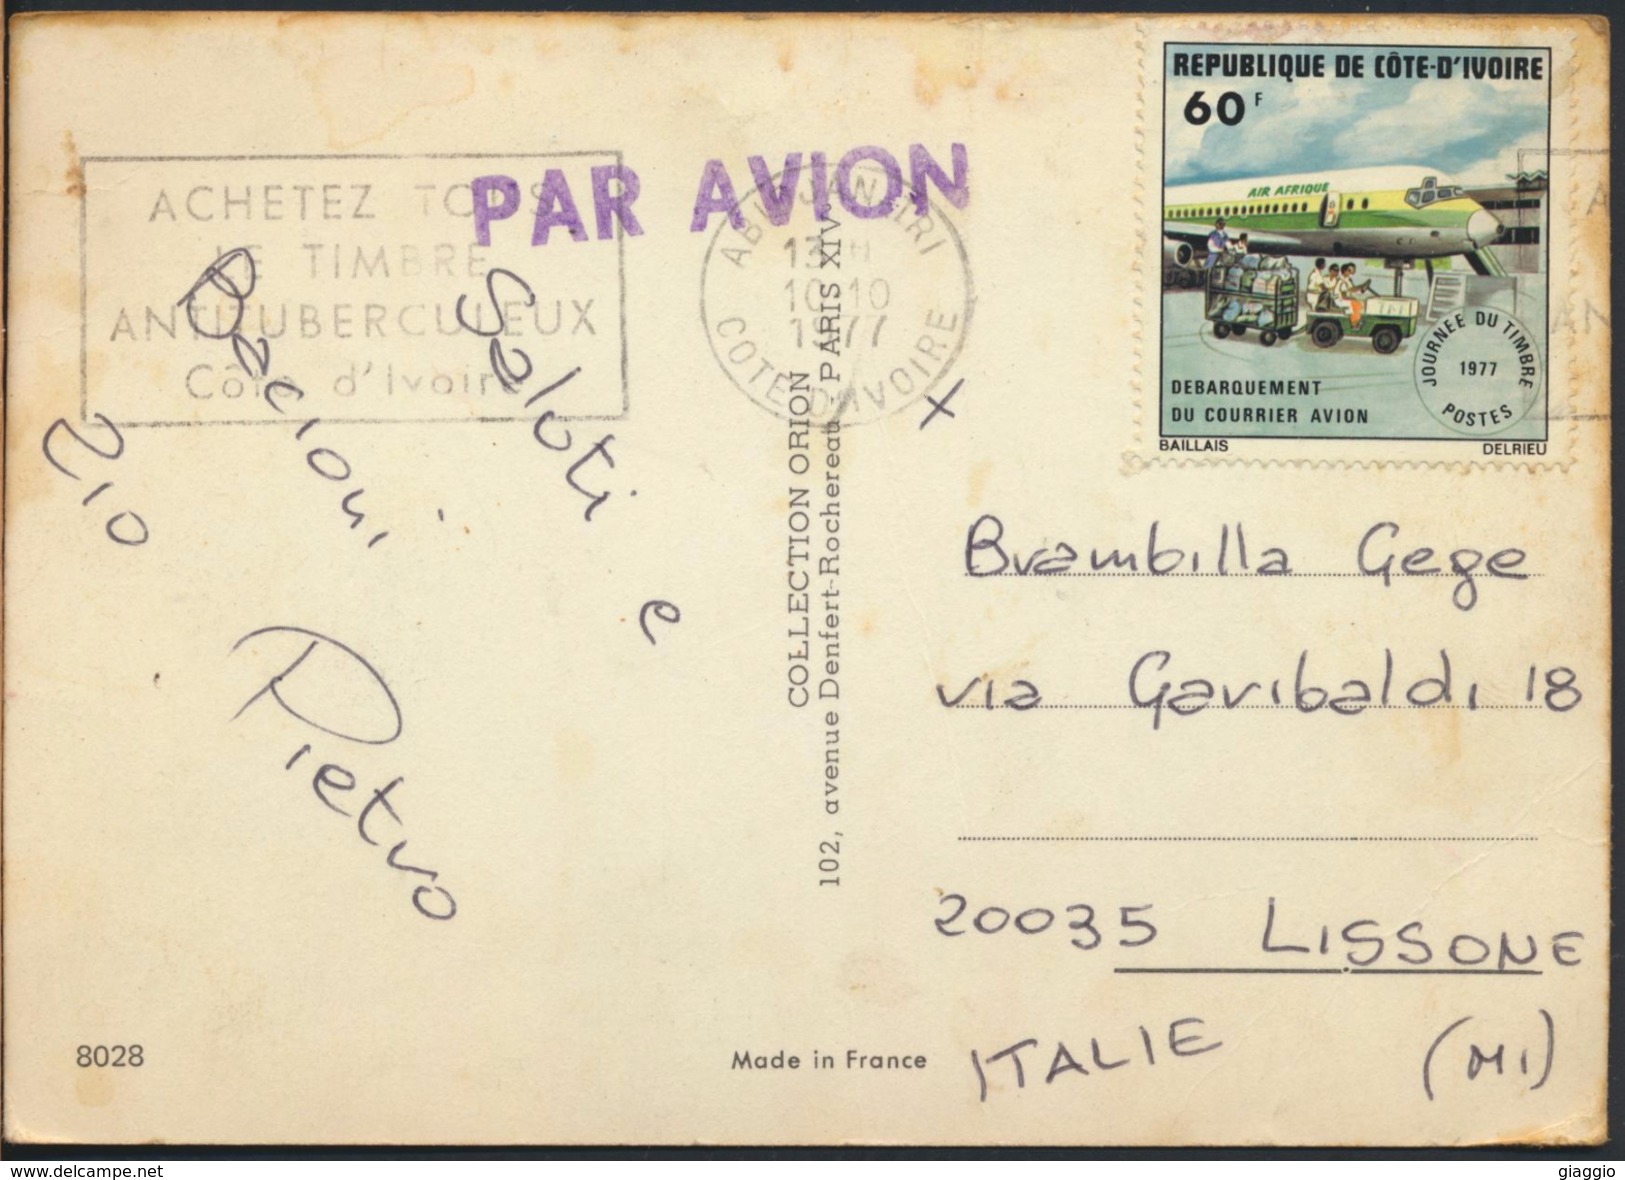 °°° 3980 - COTE D'IVOIRE - LE PATRON UN JOUR D'AUGMENTATION - 1977 With Stamps °°° - Costa D'Avorio